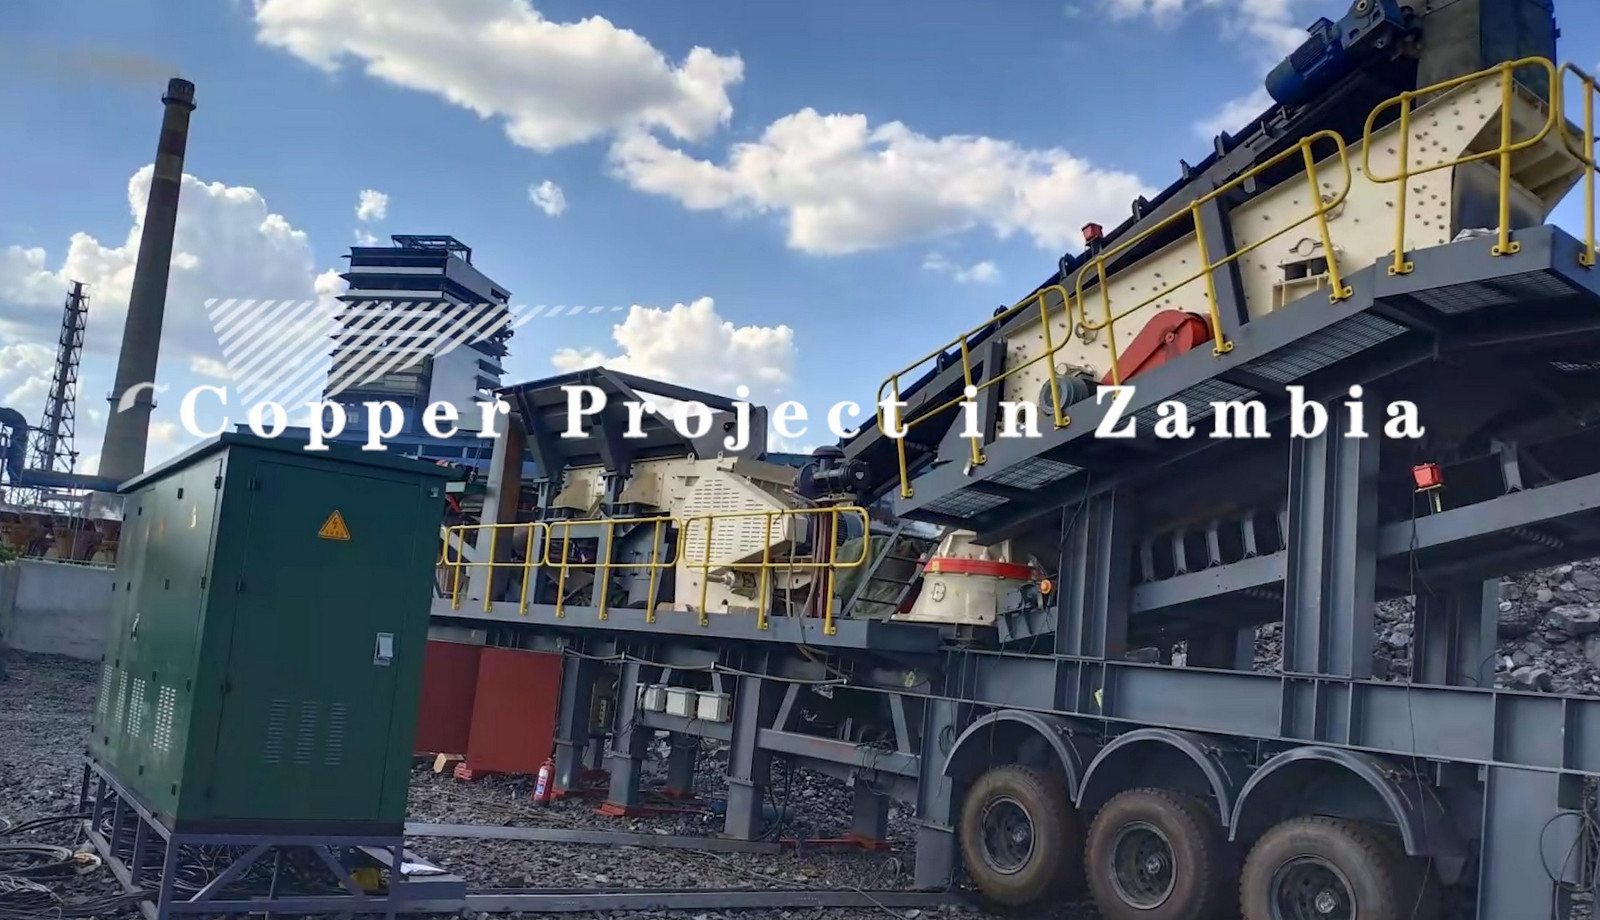 Copper Project in Zambia